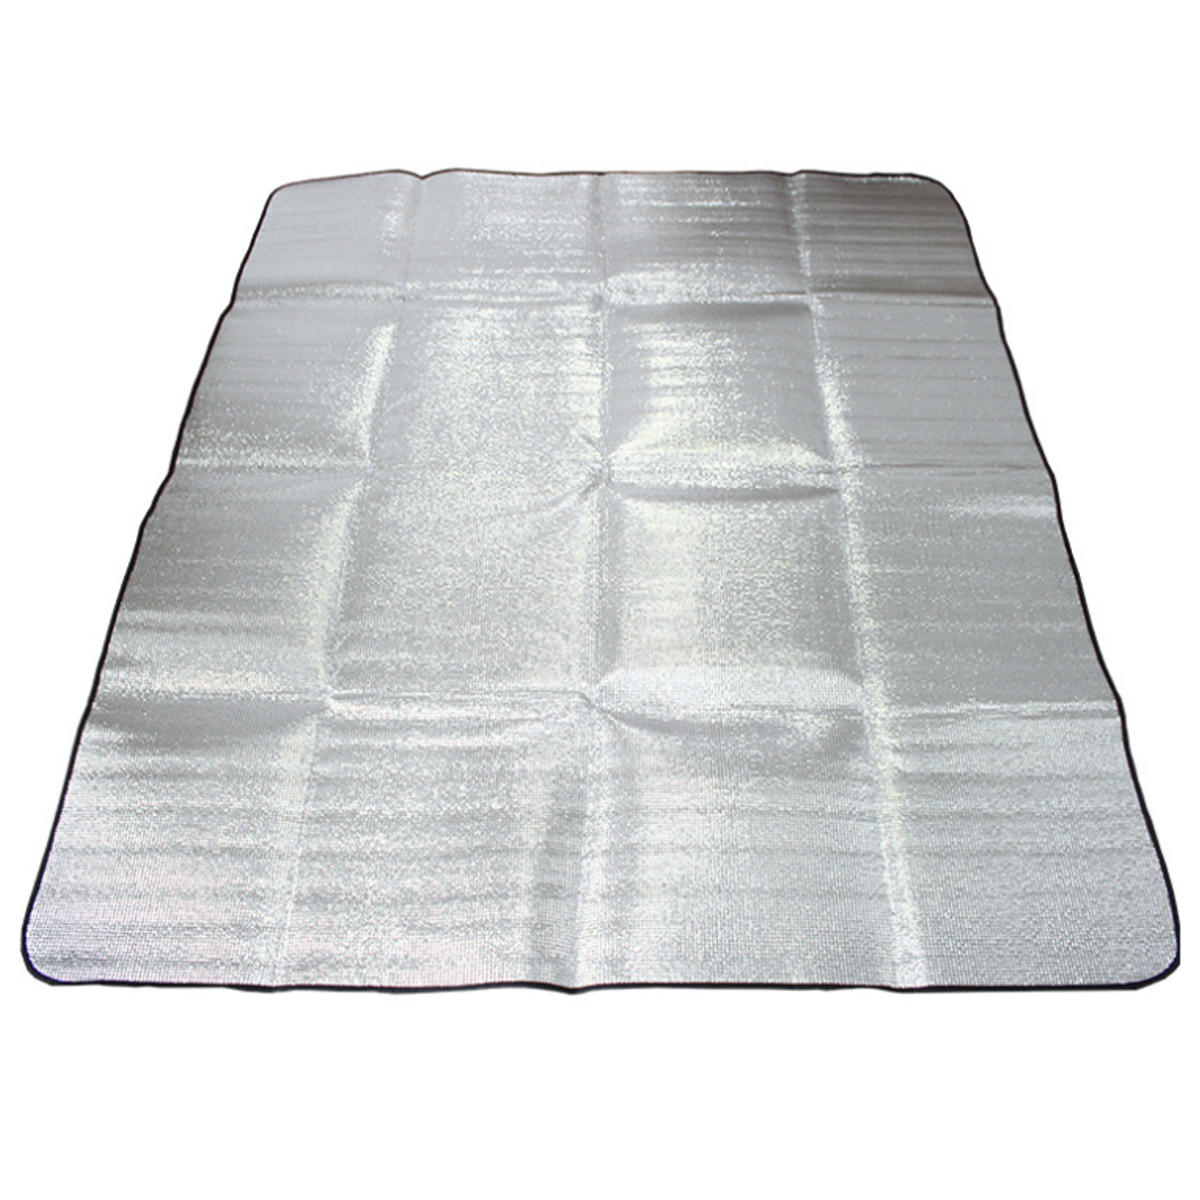 Almohadilla de aluminio de la película de la estera de la tienda de doble cara al aire libre Impermeable cámping manta de la comida campestre